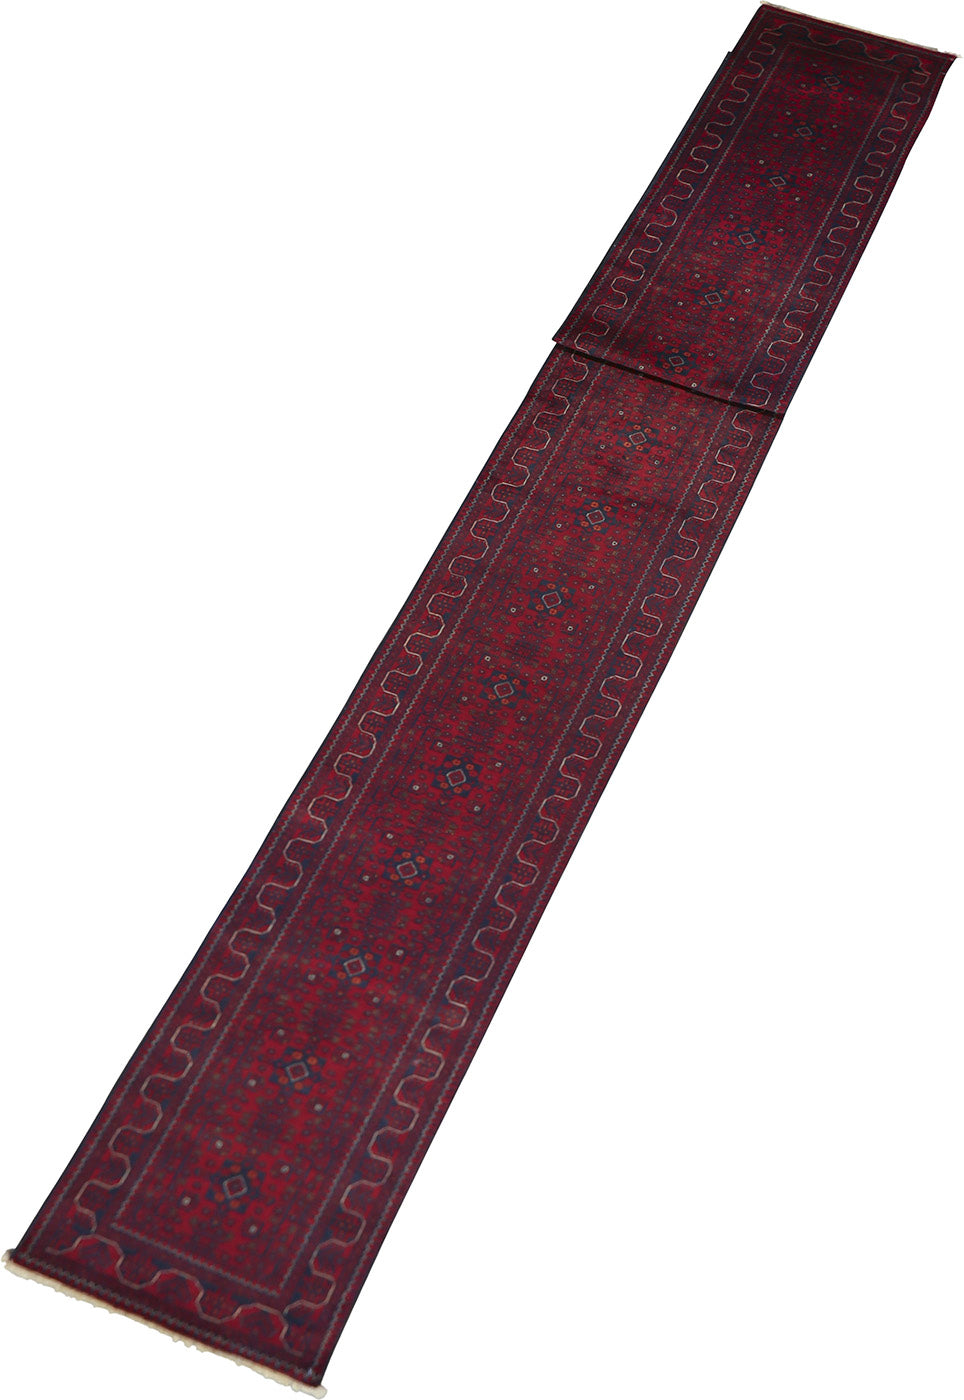 Khal Muhammedi Wool Rug 2'8''x31'7''